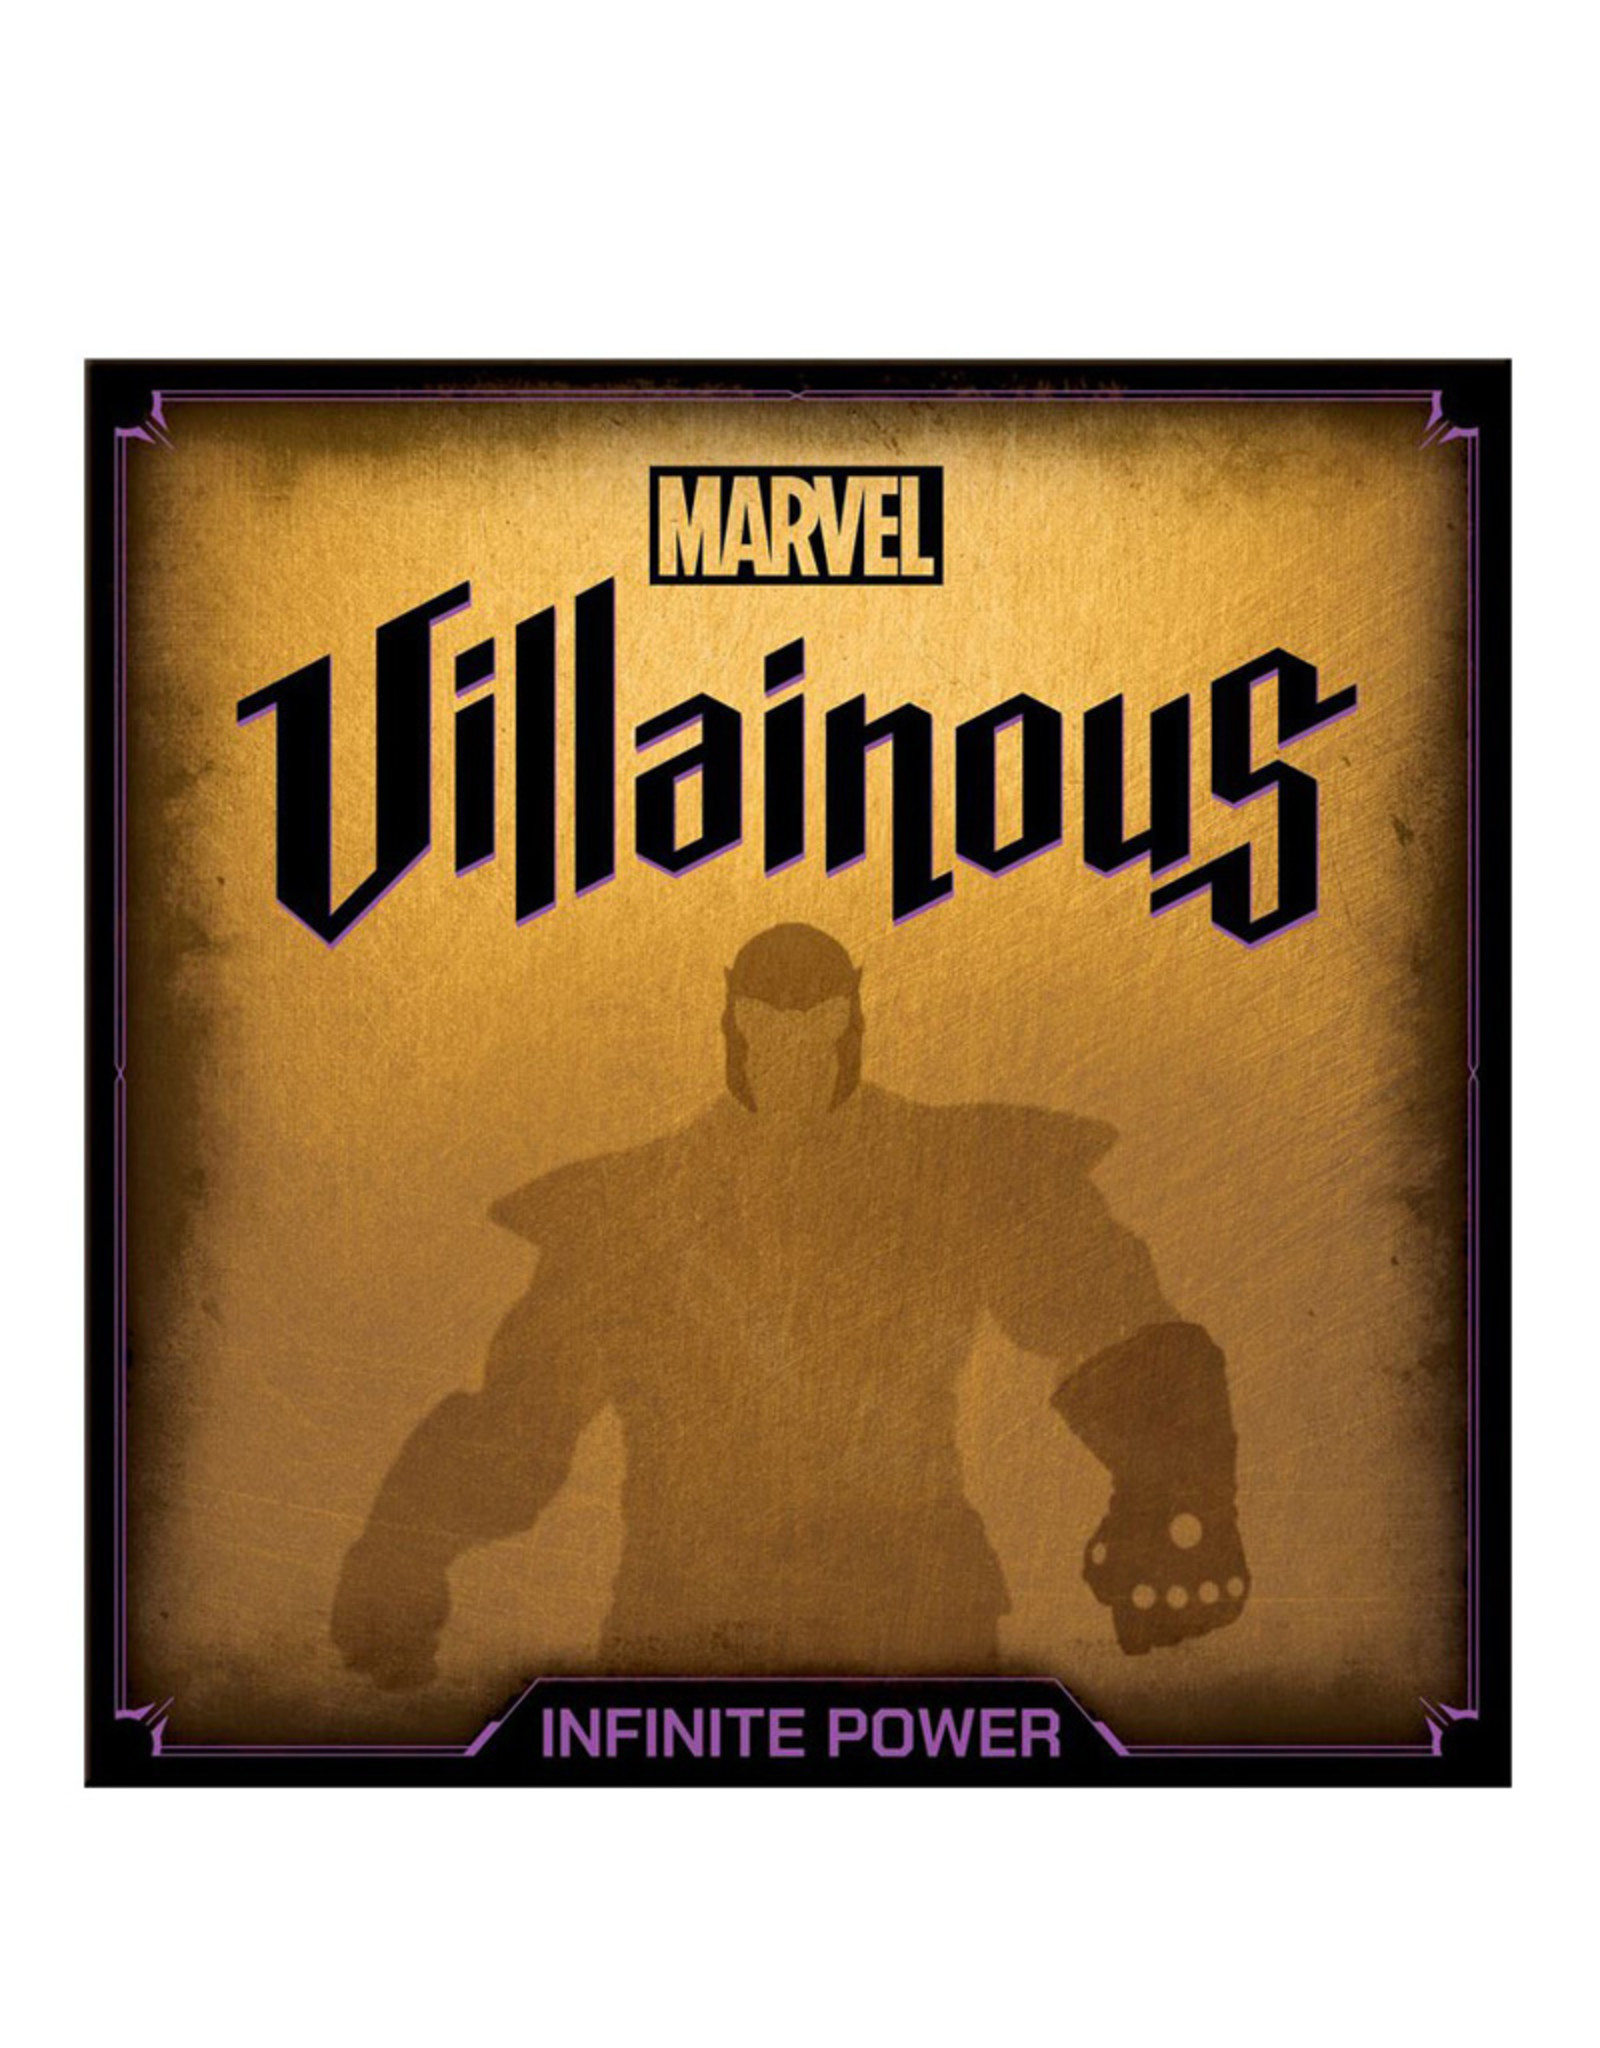 Ravensburger Marvel Villainous: Infinite Power